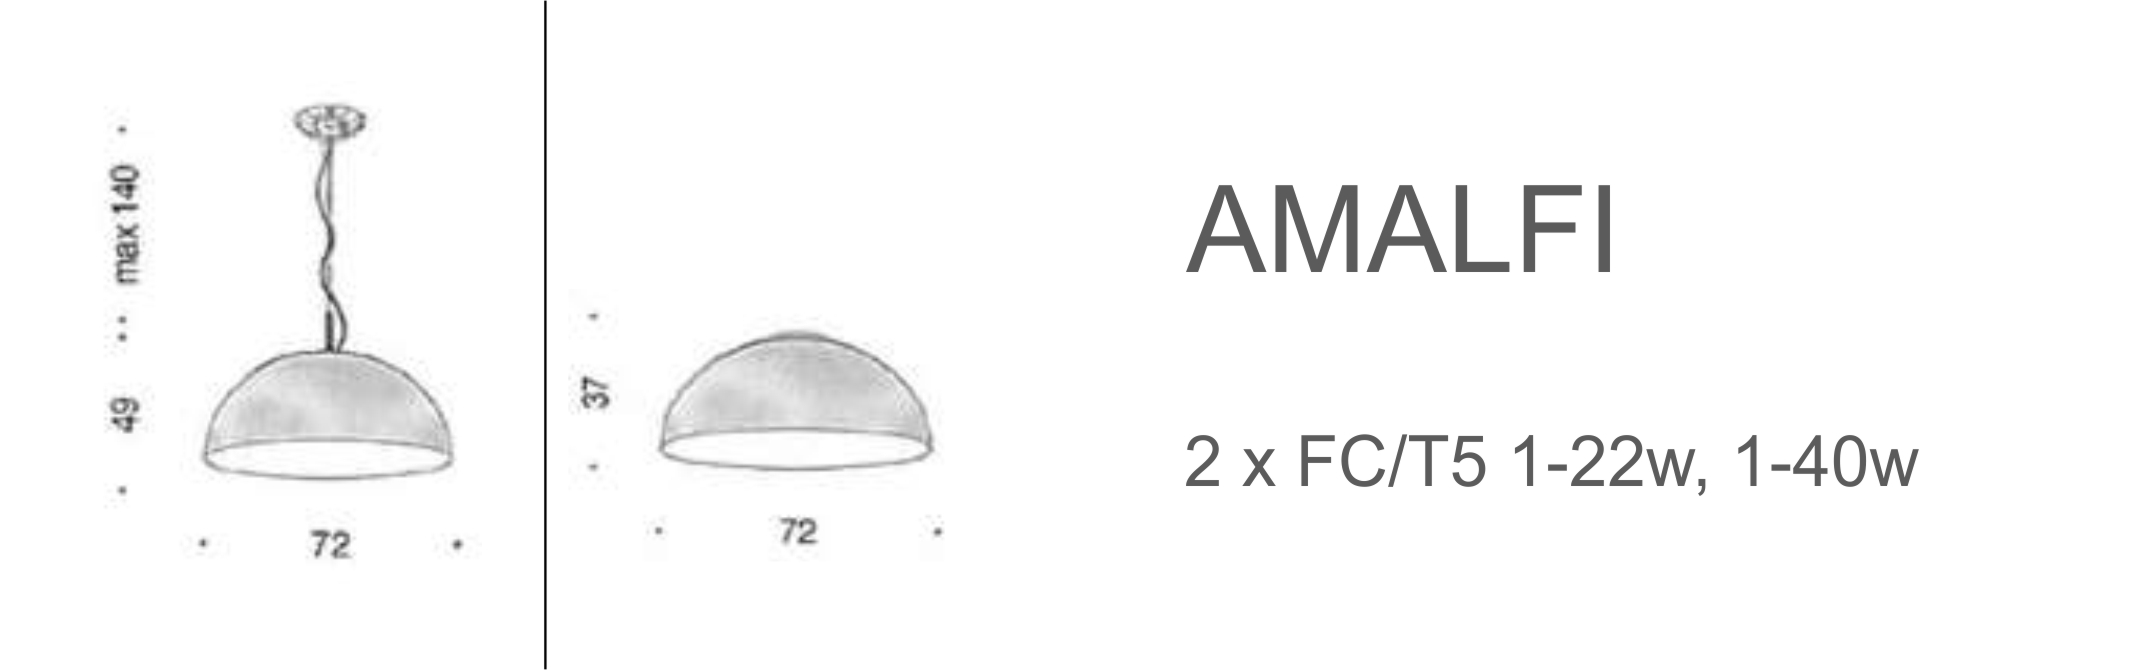 Amalfi - D72 (FC/T5)